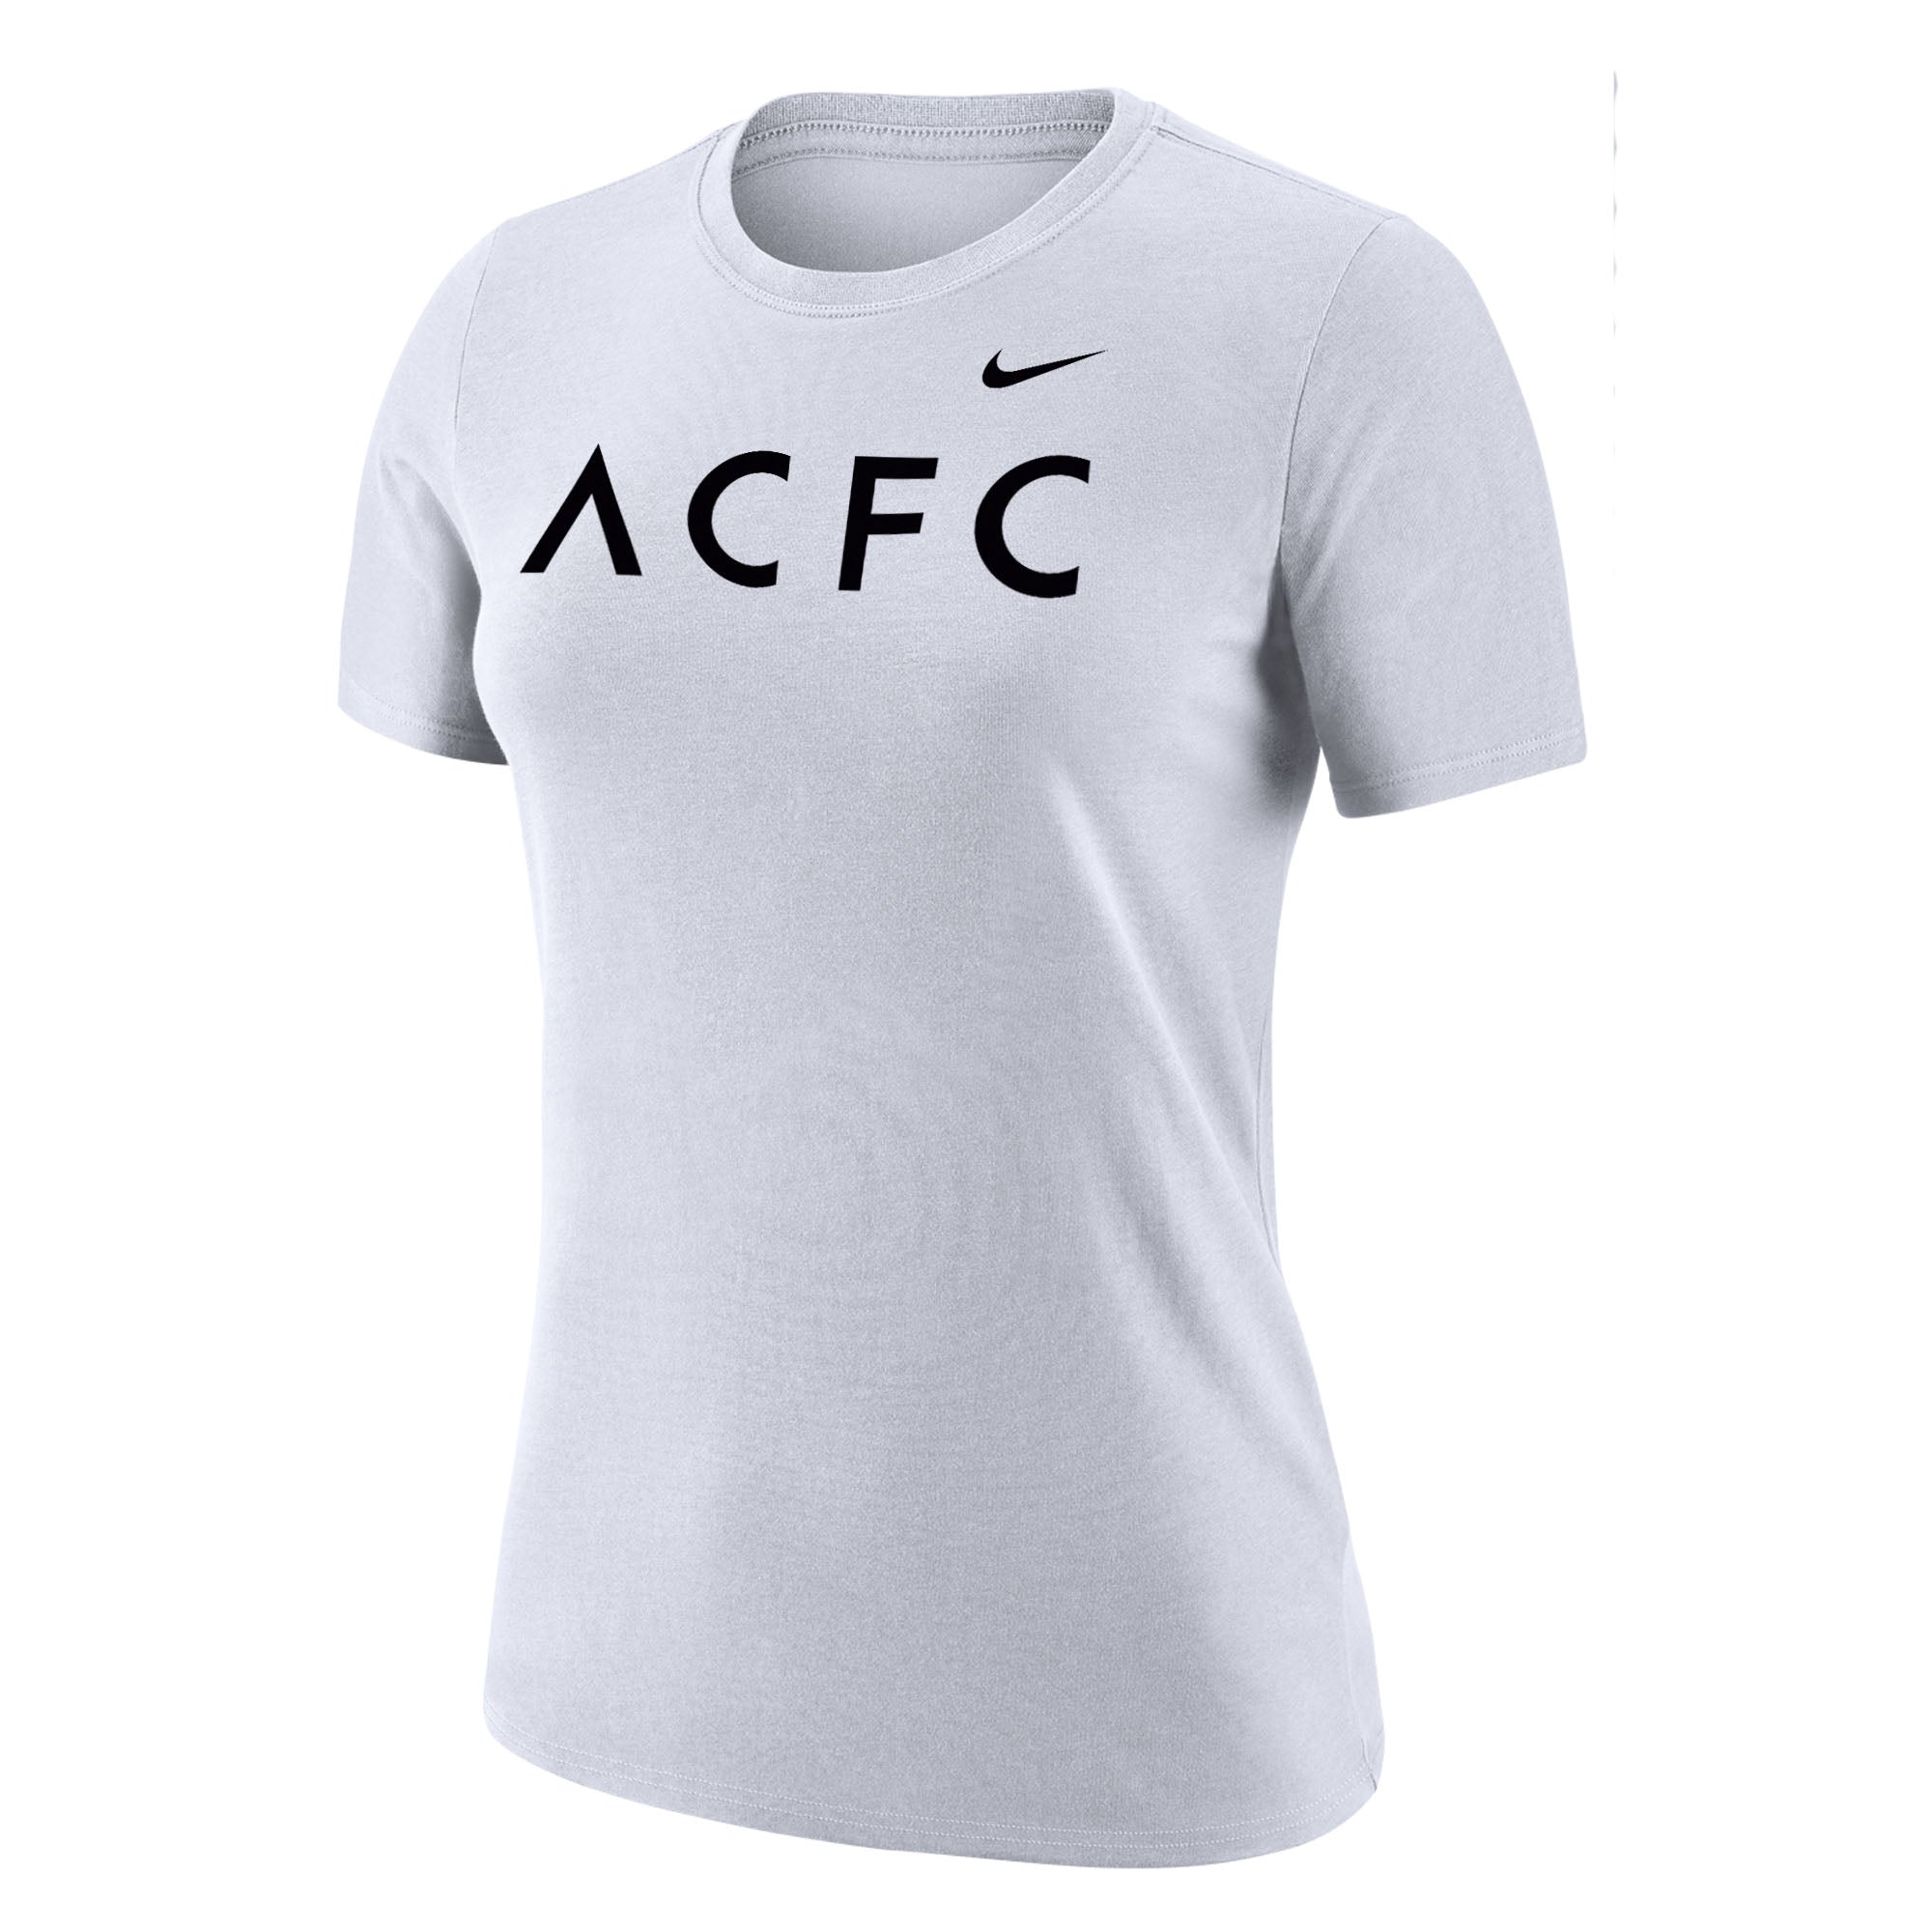 Camiseta blanca de manga corta Nike Dri-FIT ACFC para mujer